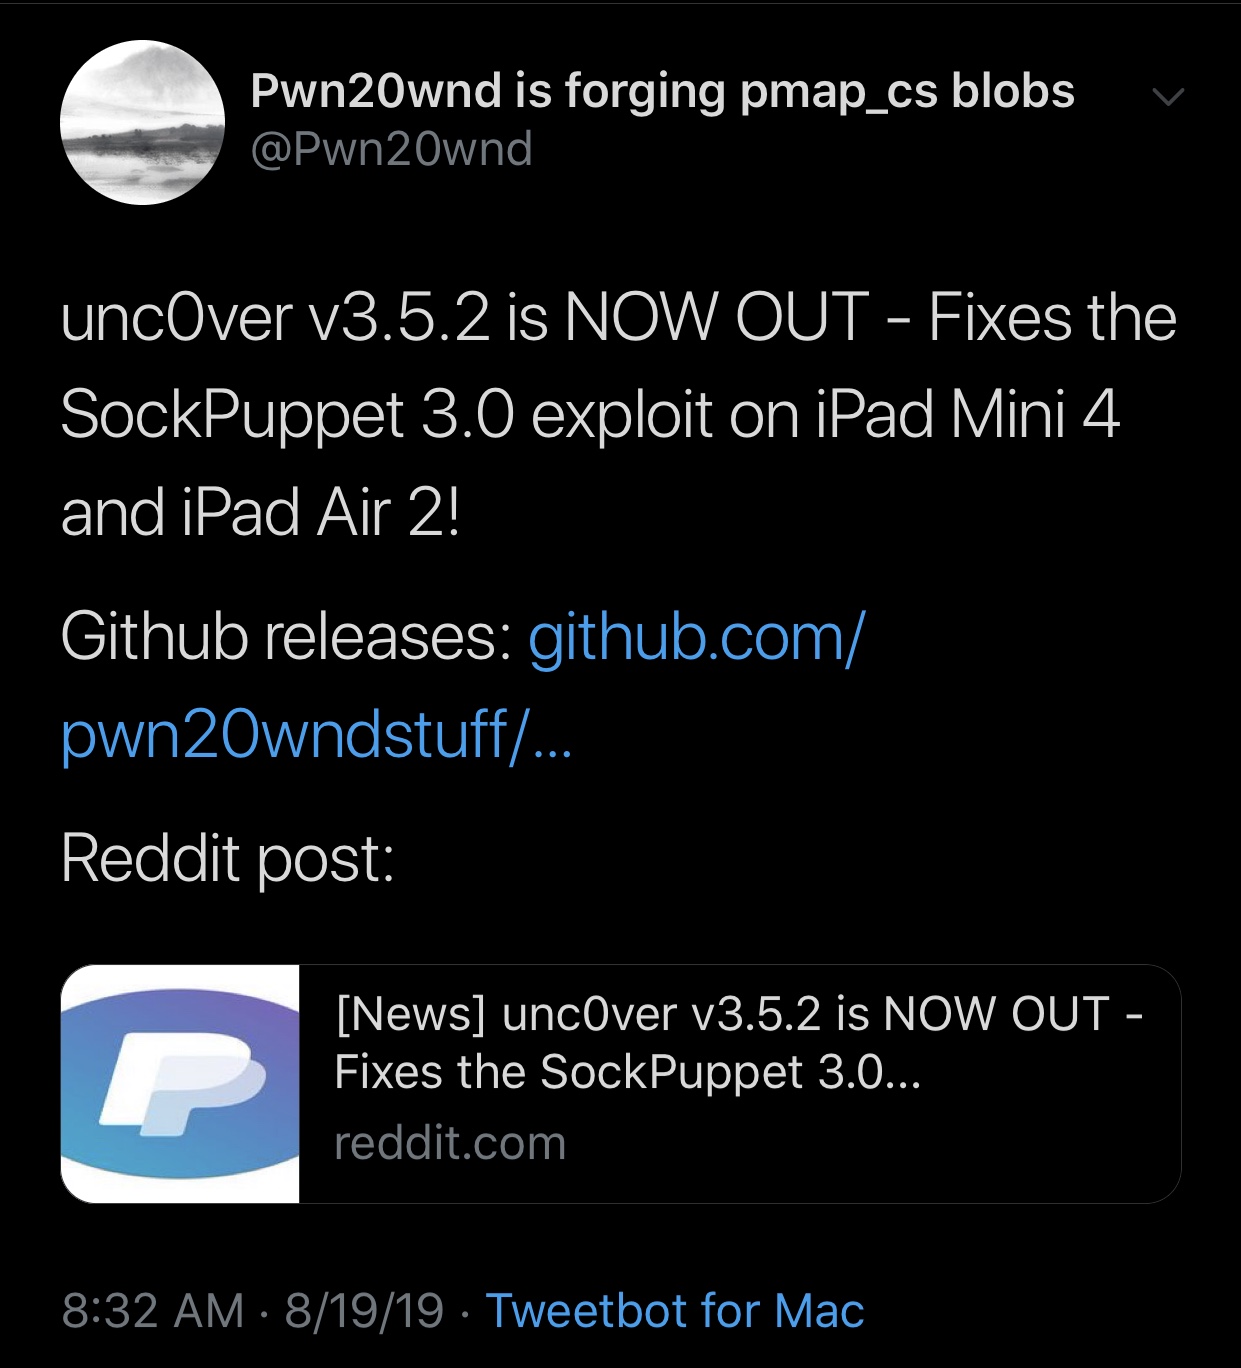 Pwn20wnd menjatuhkan unc0ver v3.5.2 untuk memperbaiki eksploitasi Sock Puppet pada iPad tertentu 3